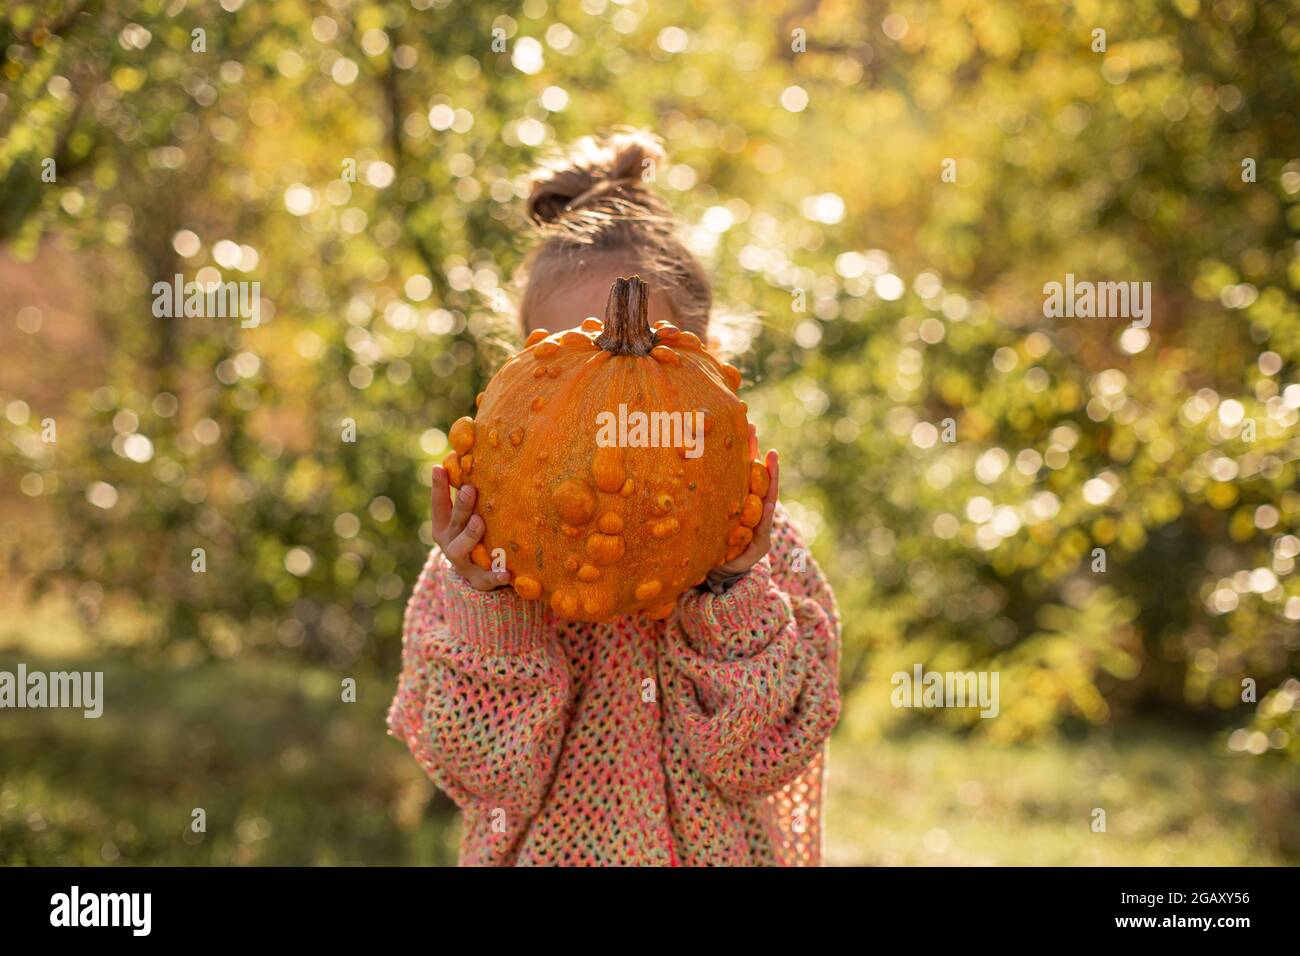 Calabaza naranja deformada y fea en las manos de un niño. Foto de stock